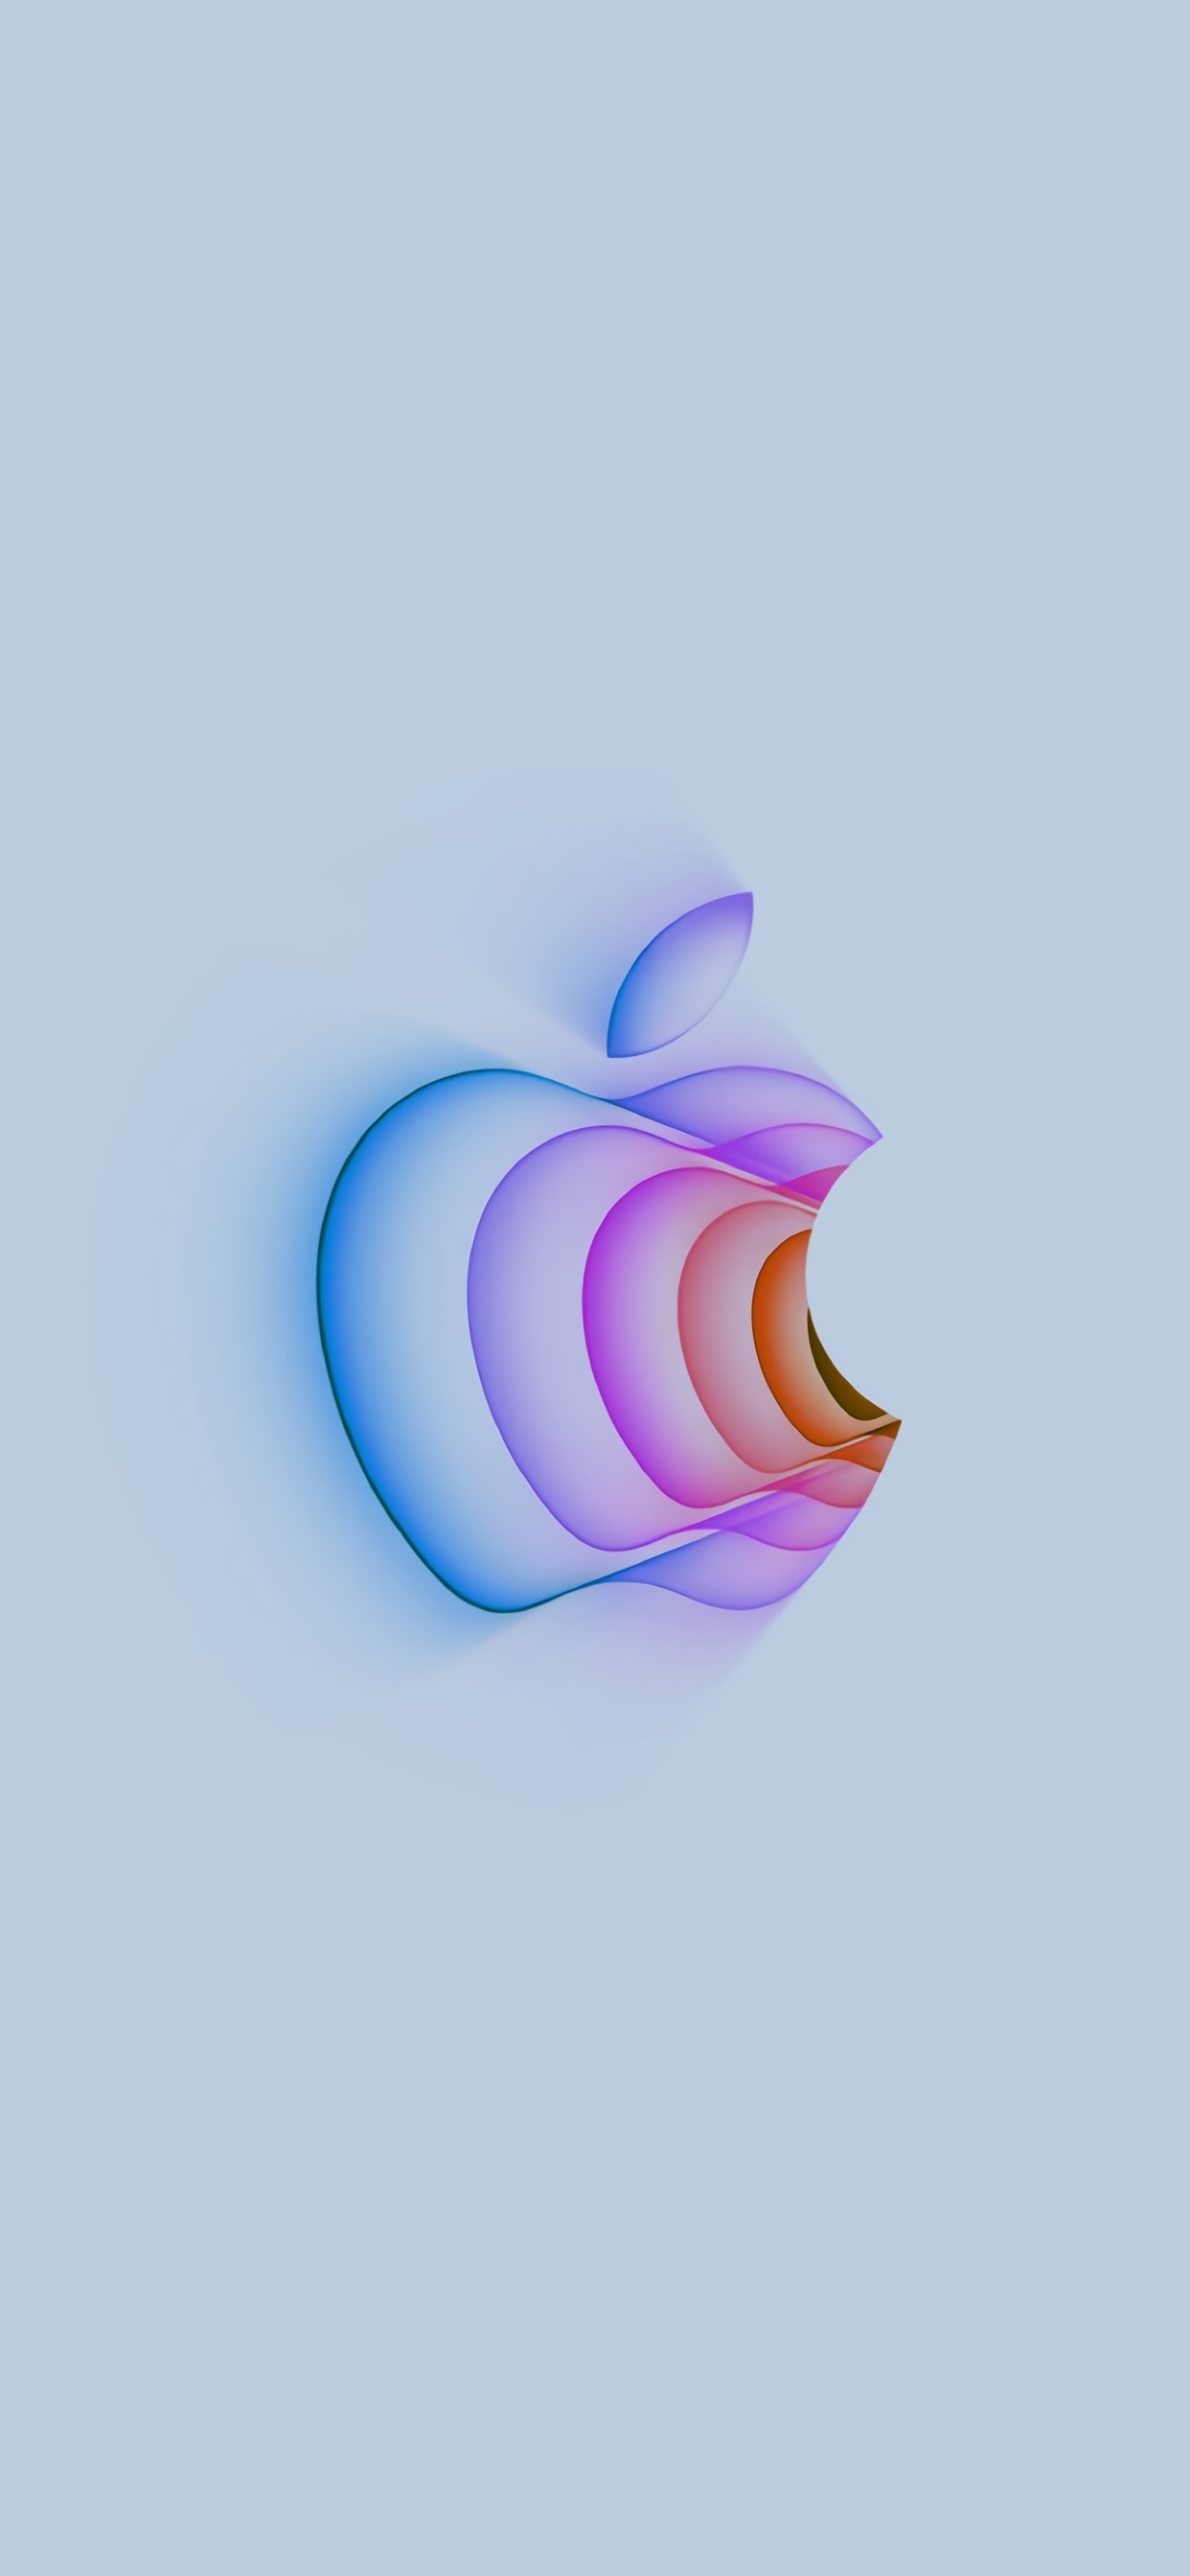 苹果多彩元素logo手机壁纸